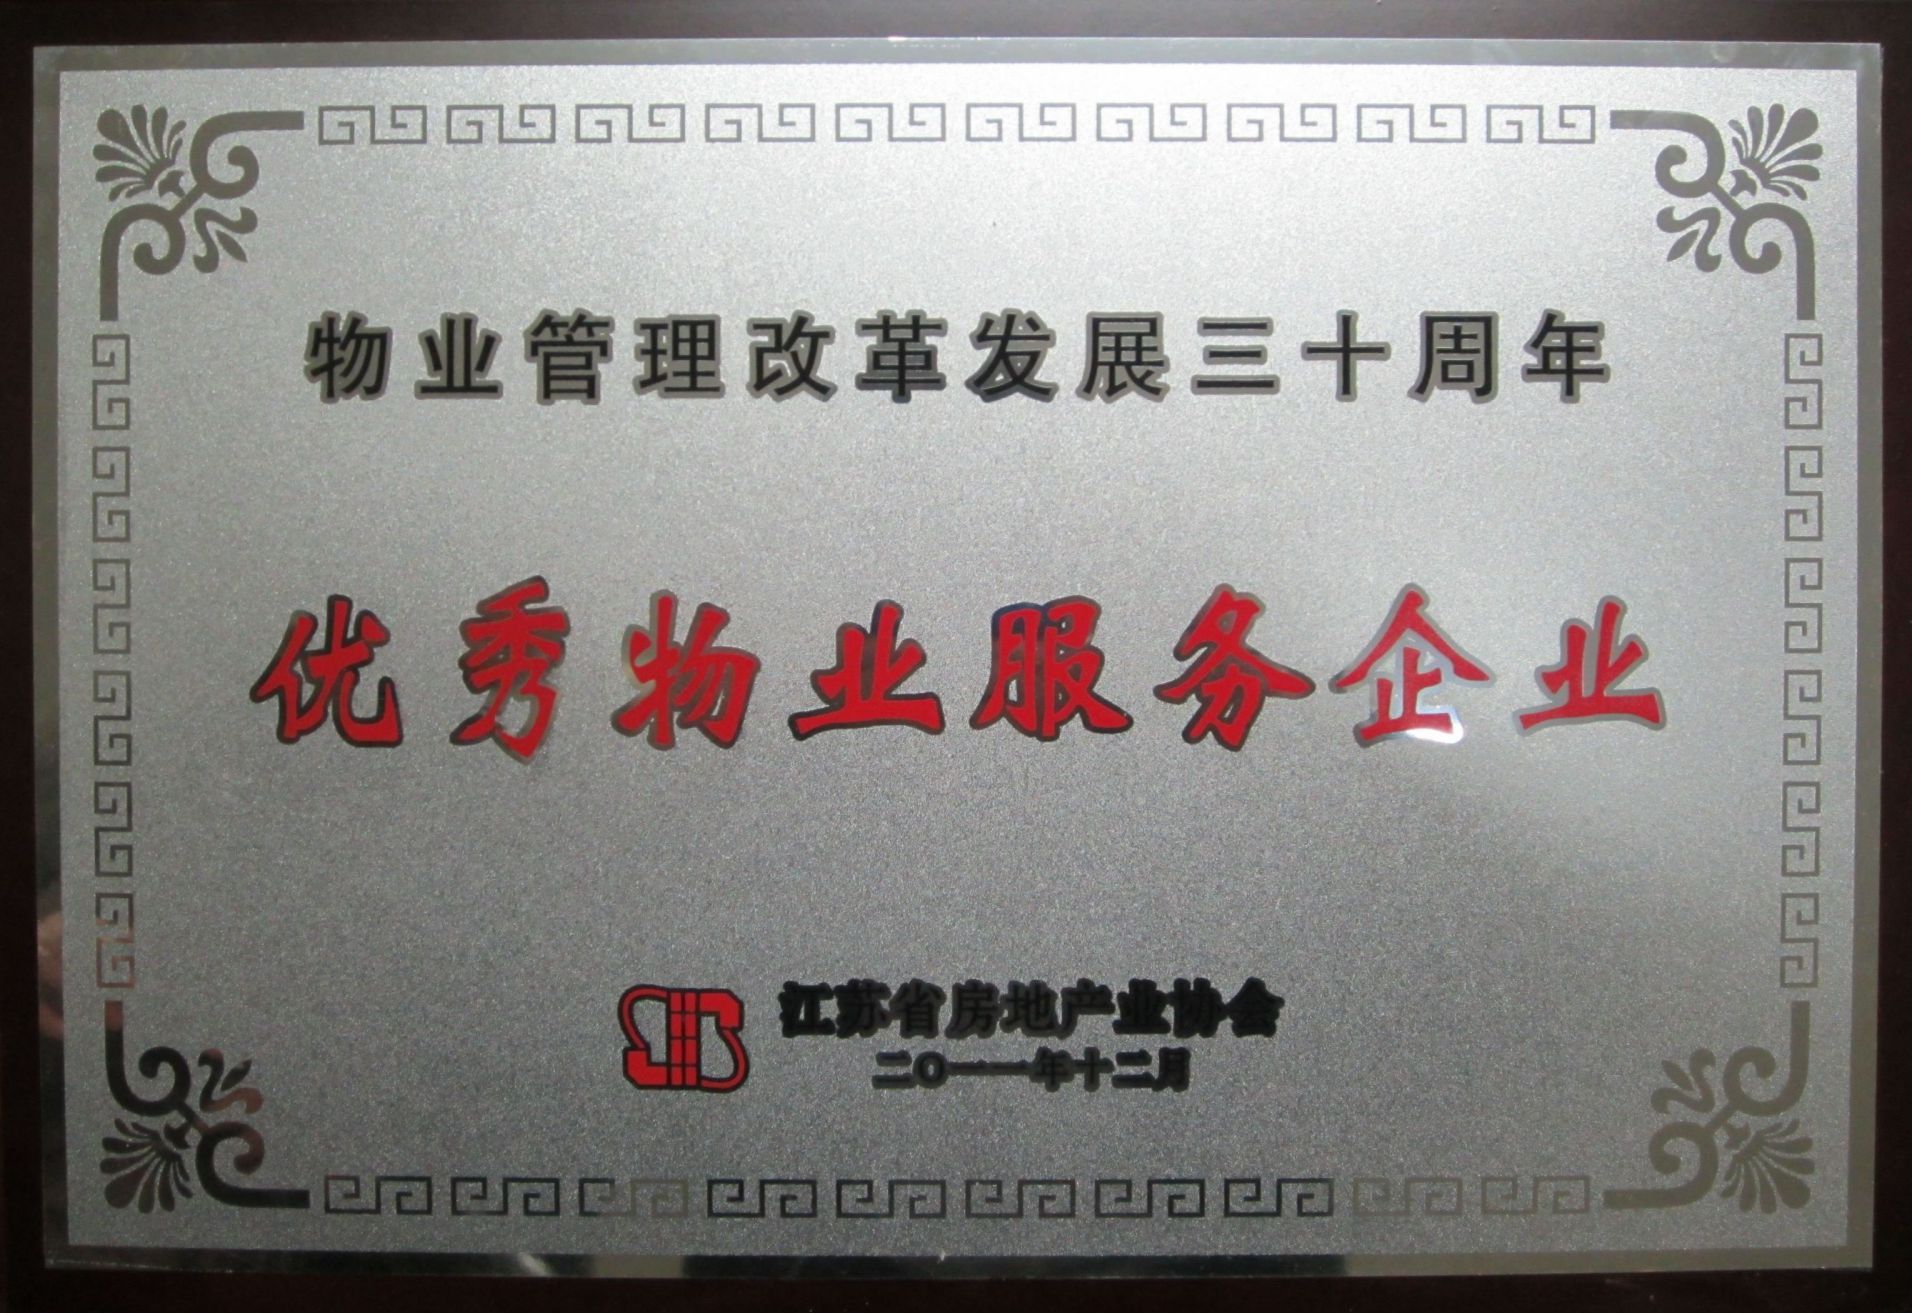 2011年被江苏省房地产业协会评为“物业优秀服务企业”